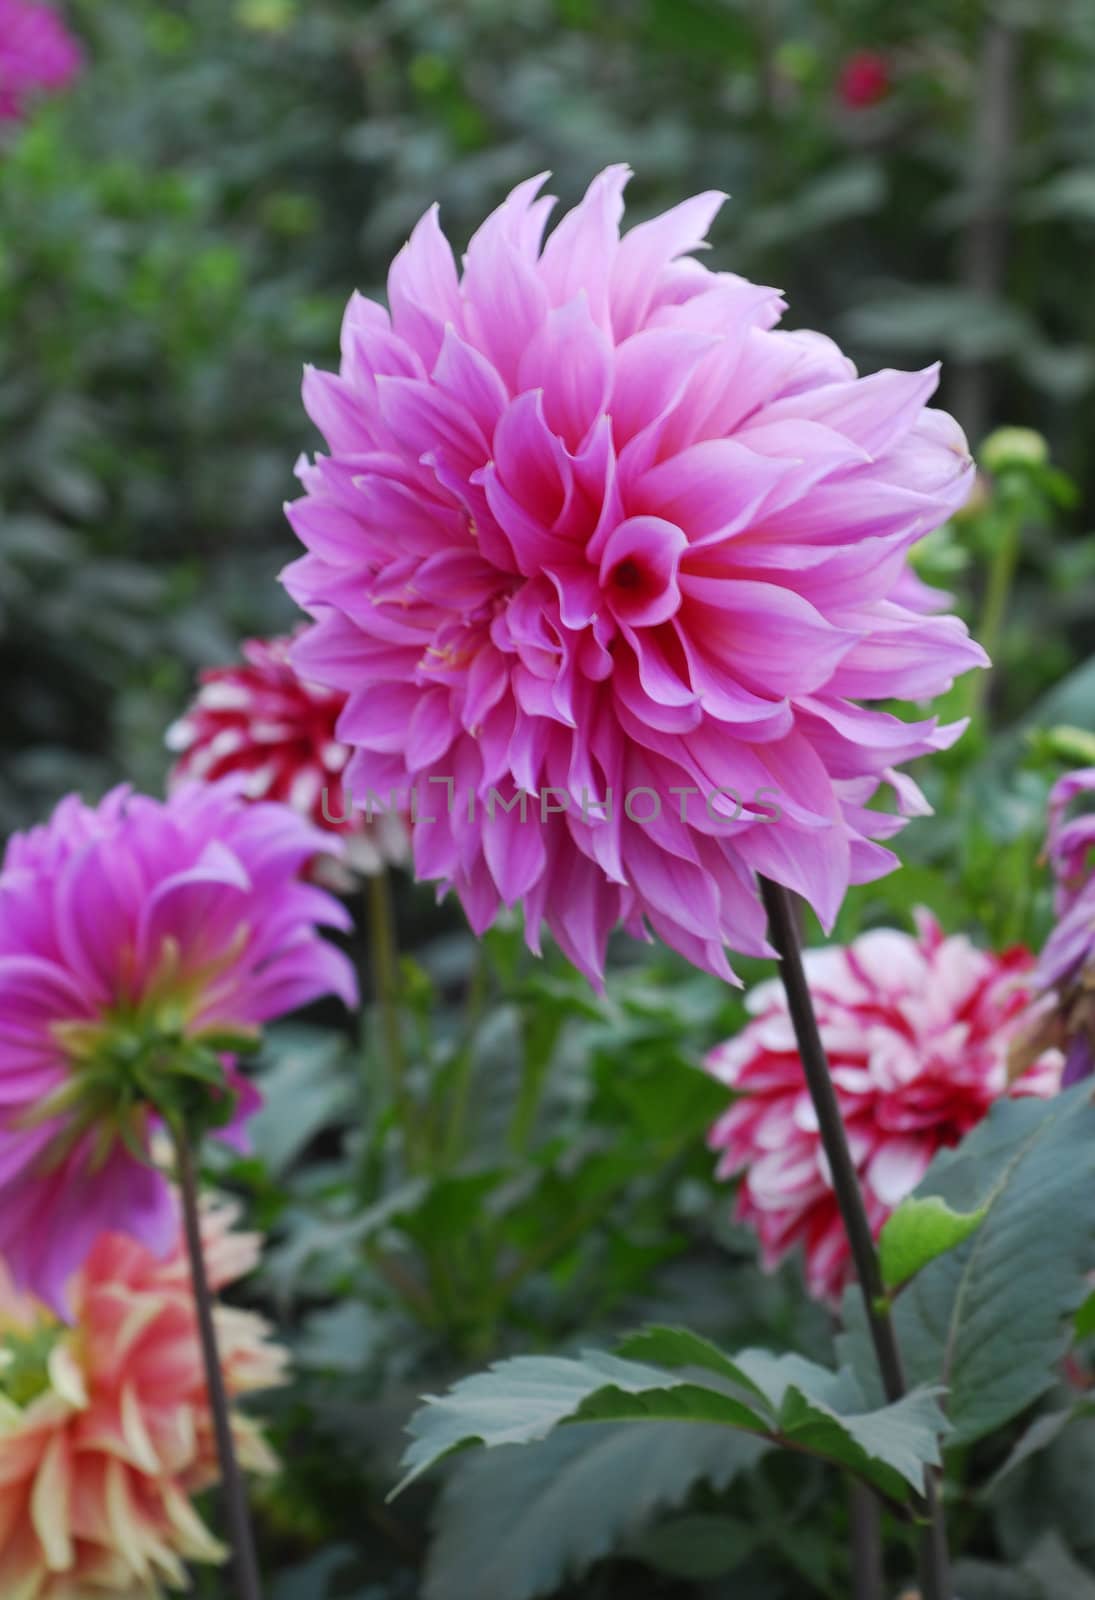 Pink Dahlia Flower in bloom